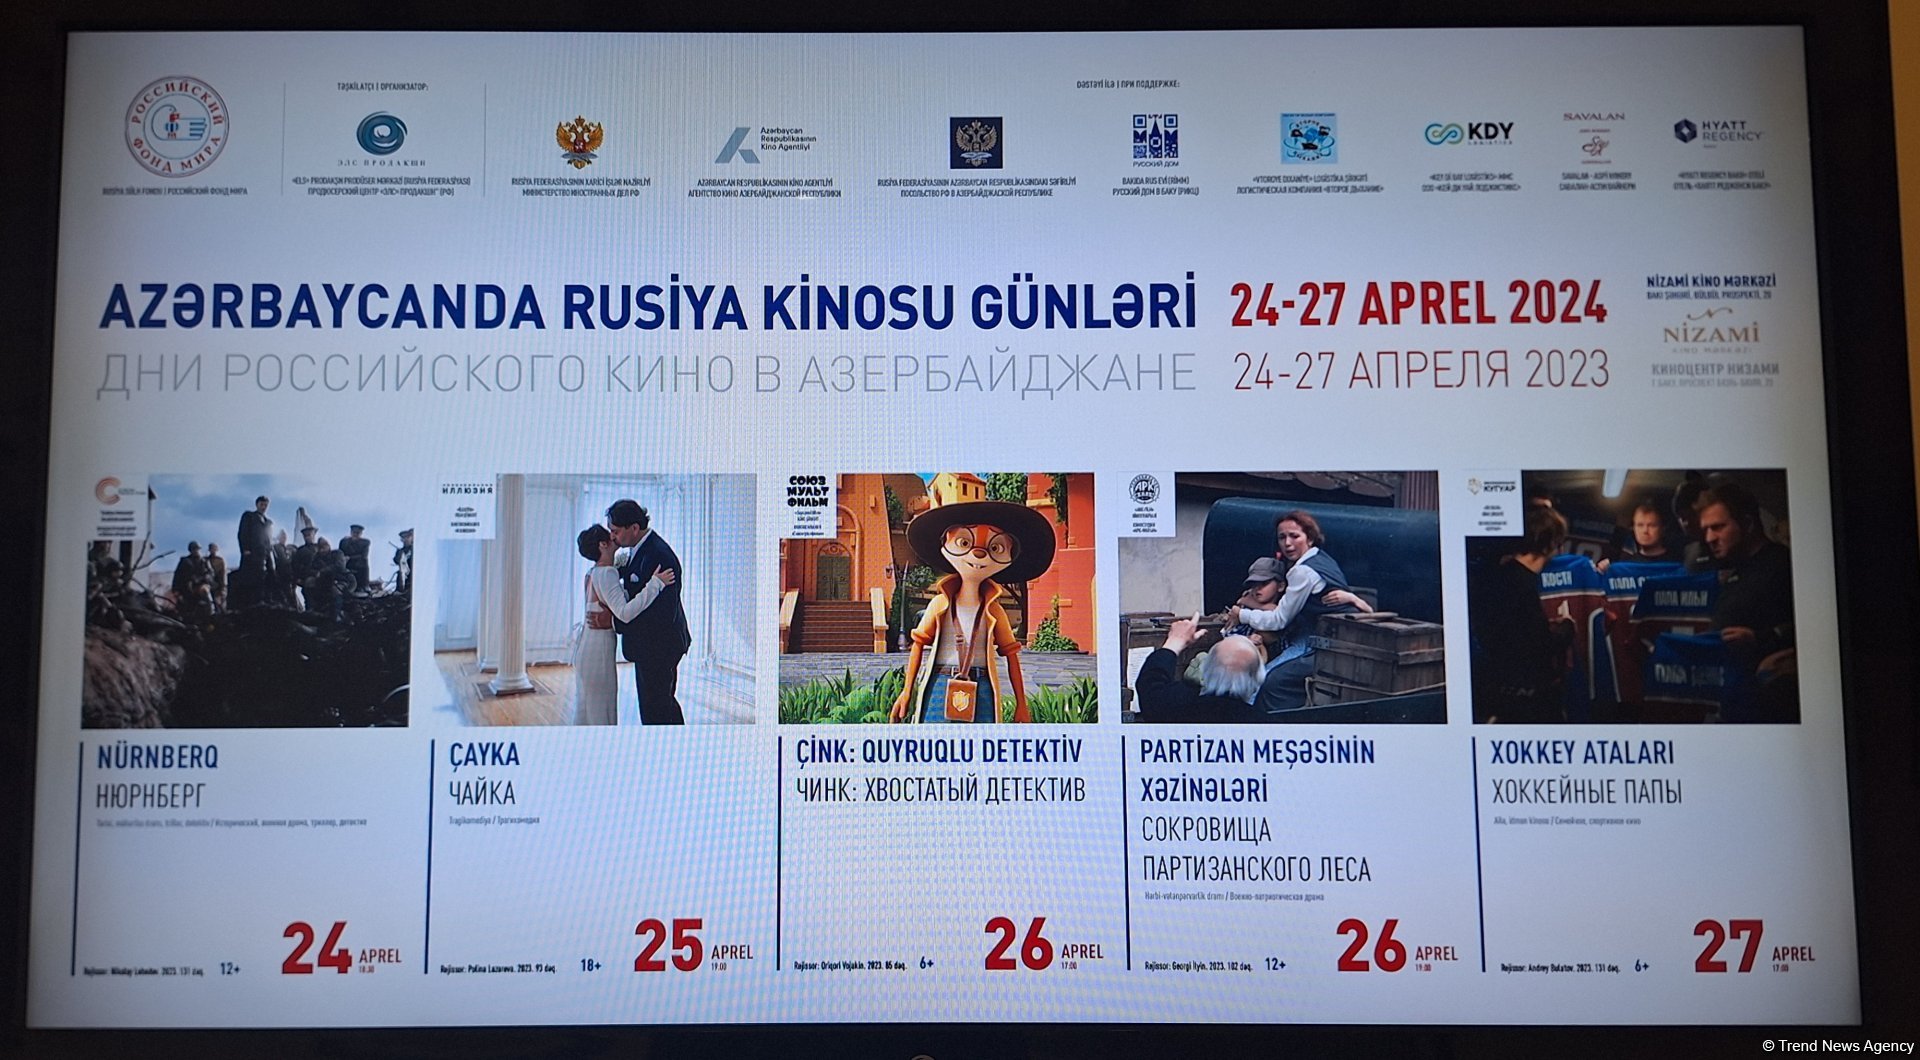 В Баку открылись Дни российского кино - праздник культуры и традиции гостеприимства (ФОТО)